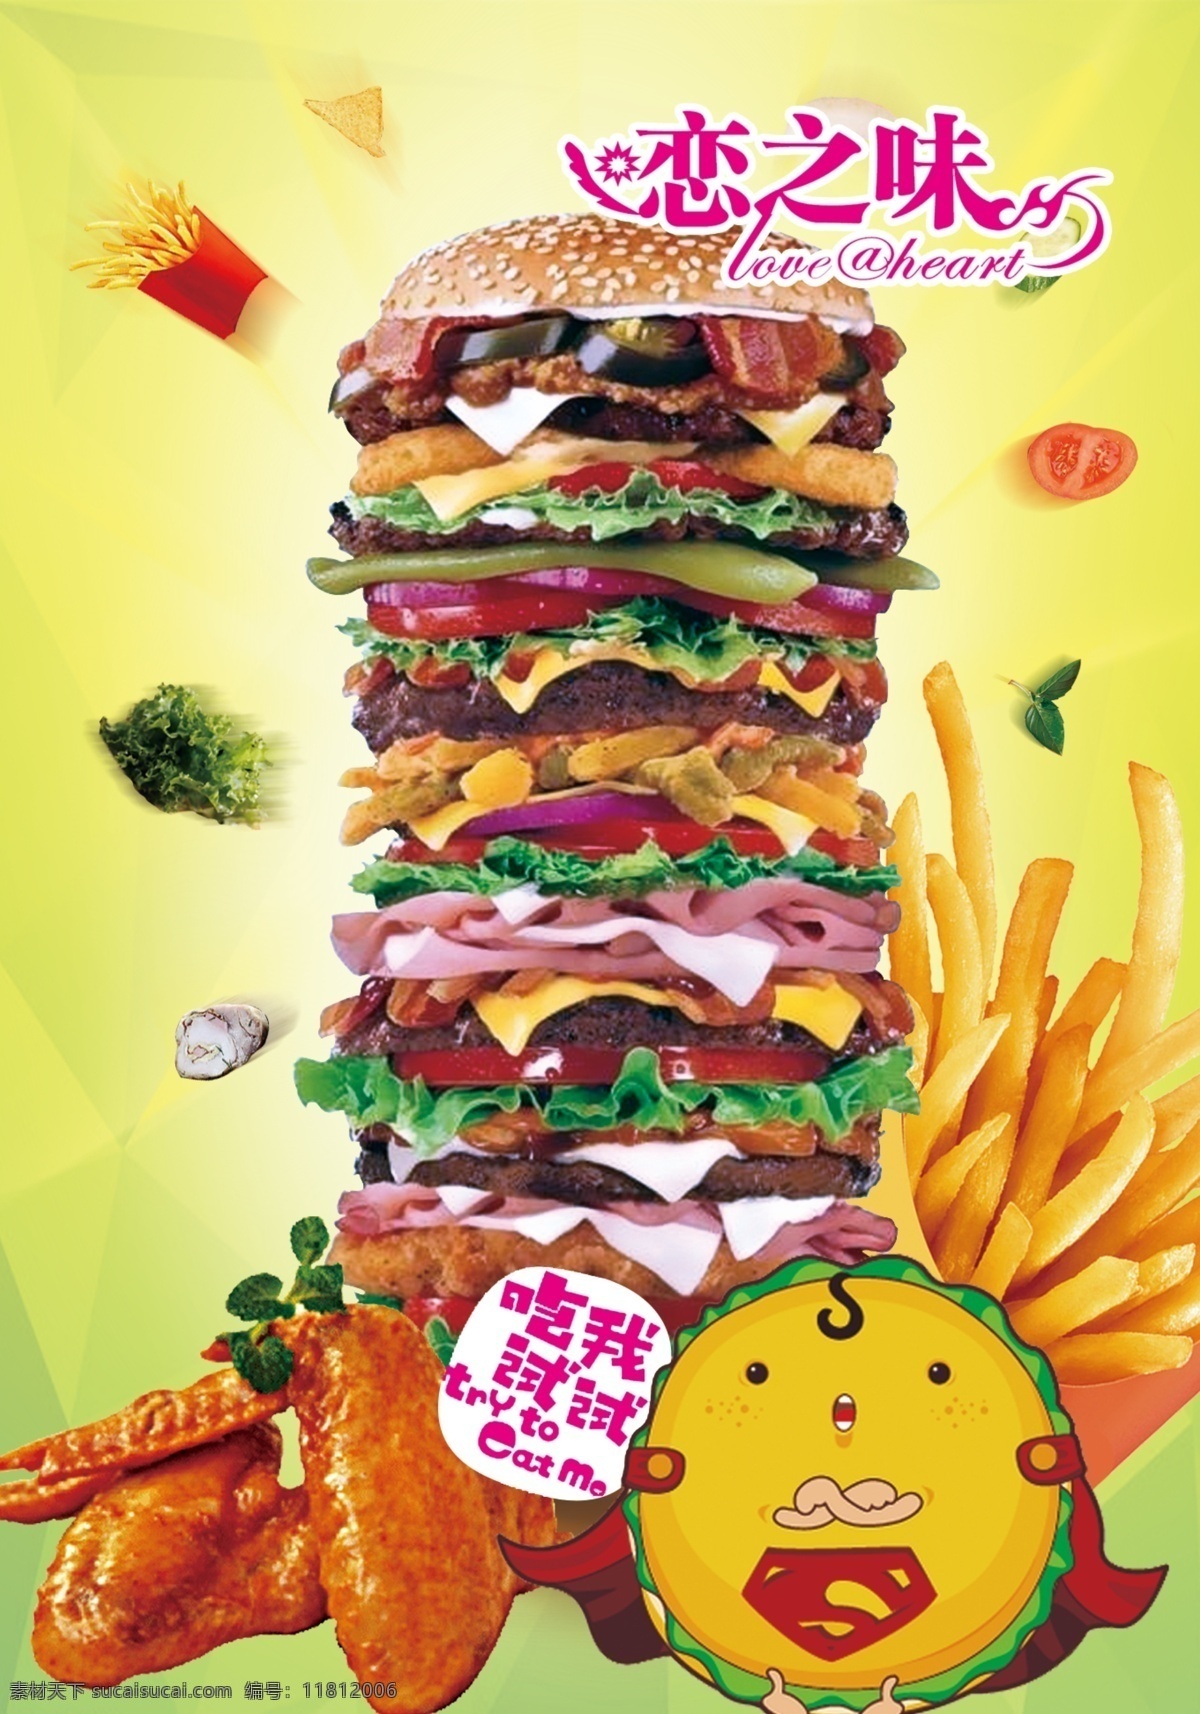 汉堡灯片 超级汉堡 摩天汉堡 灯片 汉堡 西餐 菜单菜谱